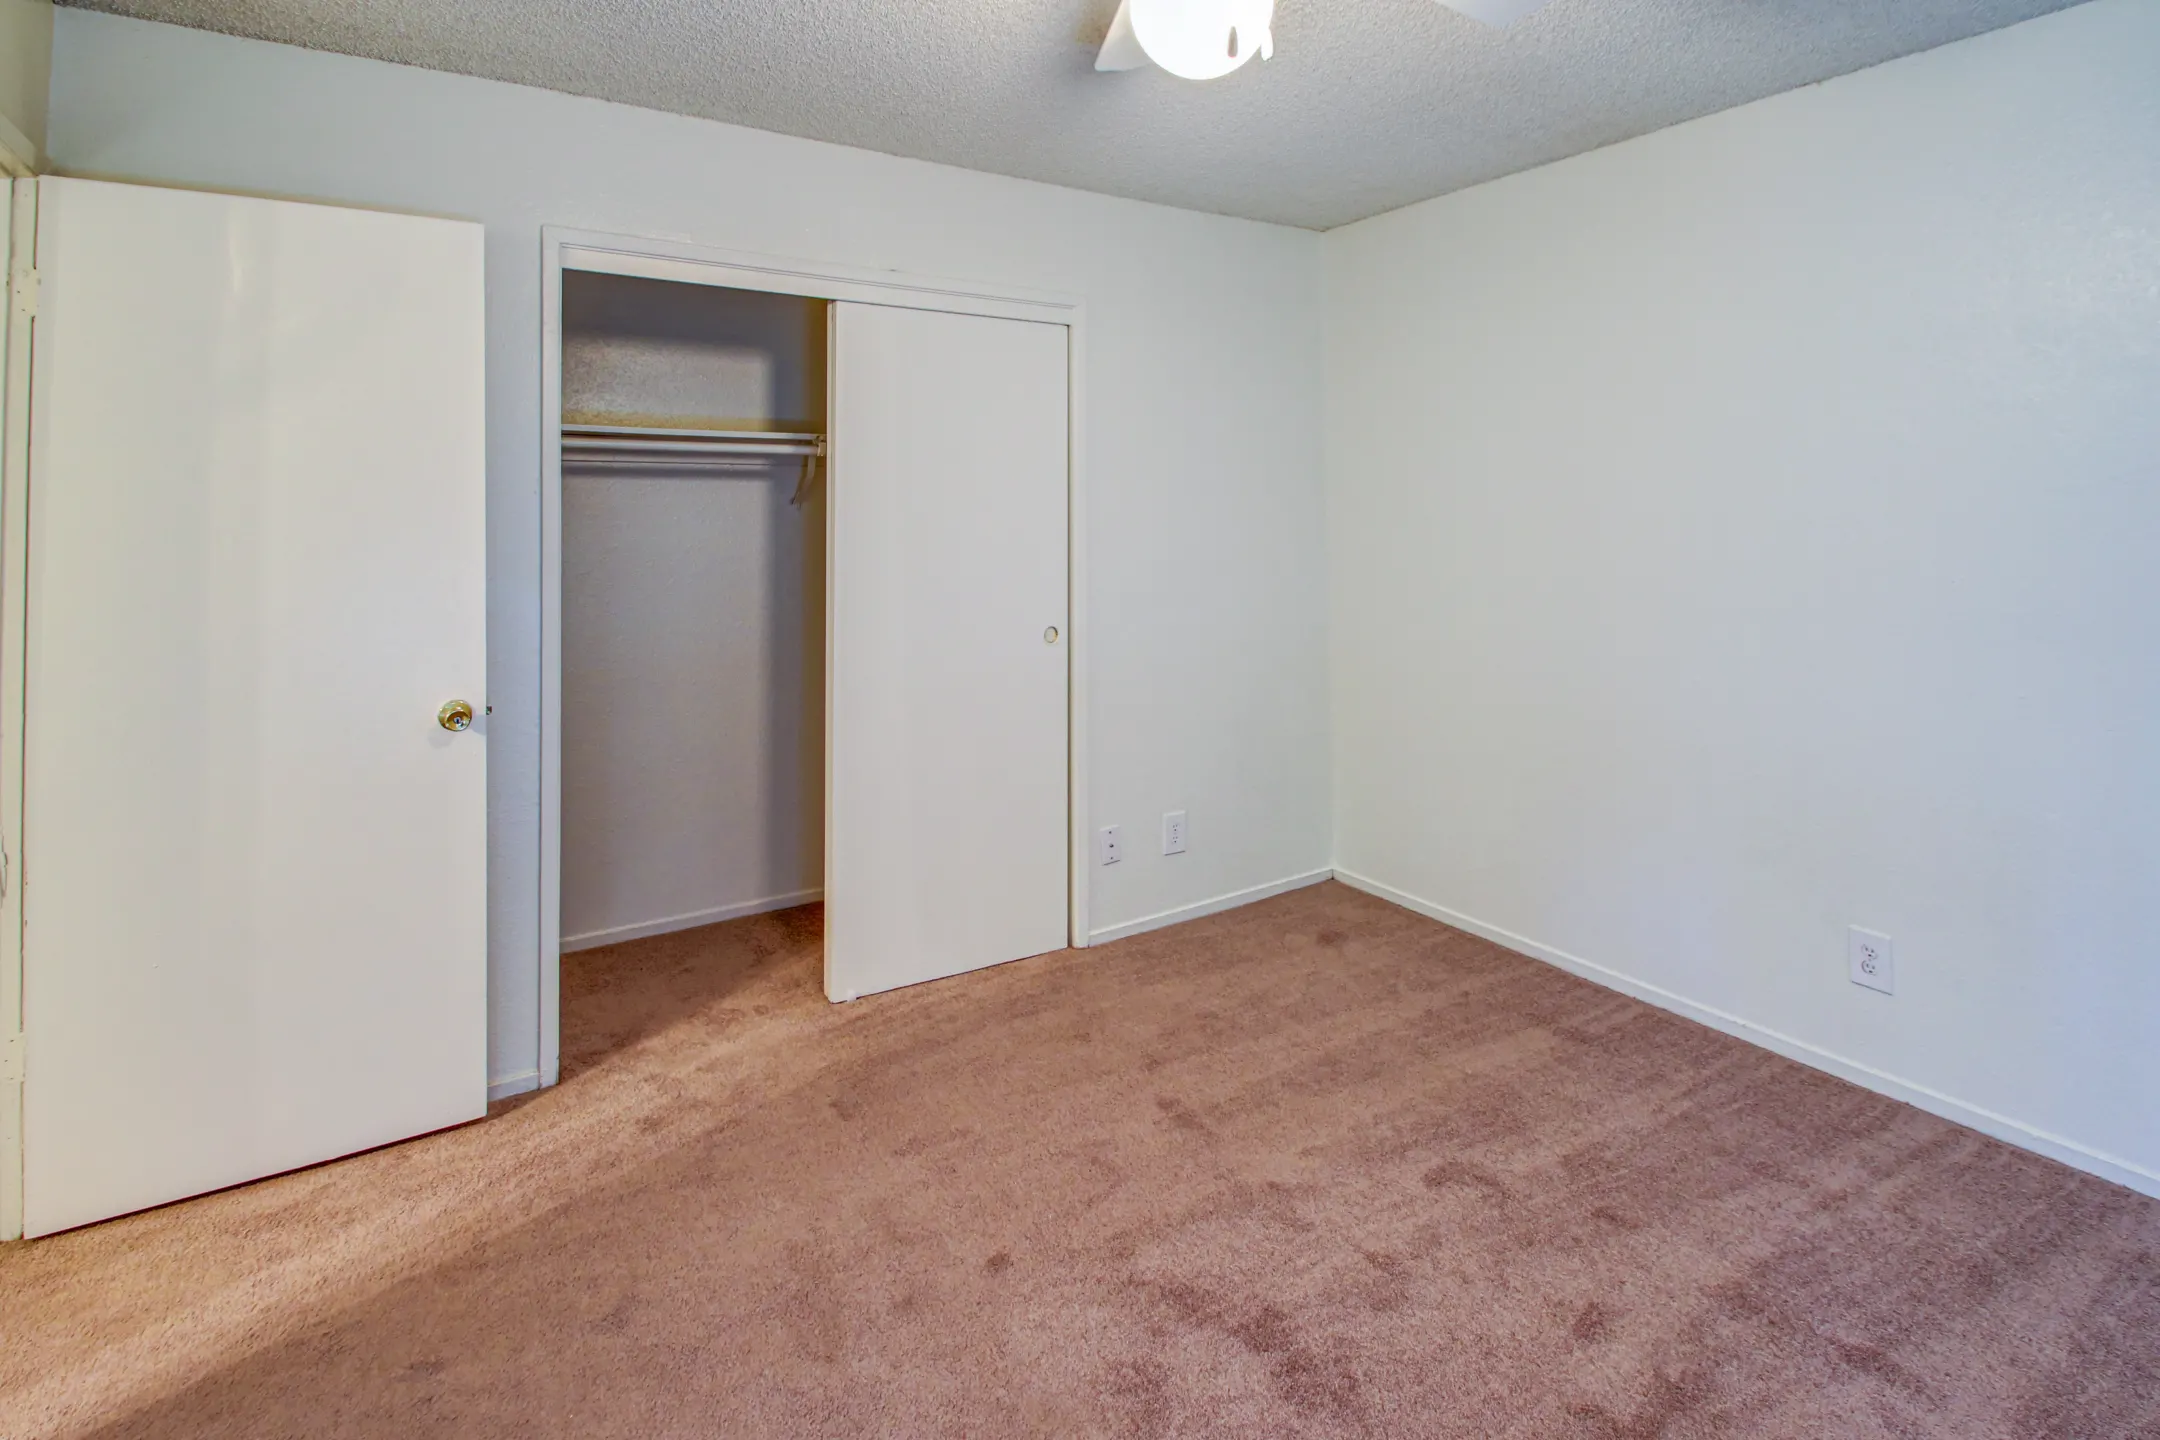 Bedroom - Santa Rosa - Bakersfield, CA